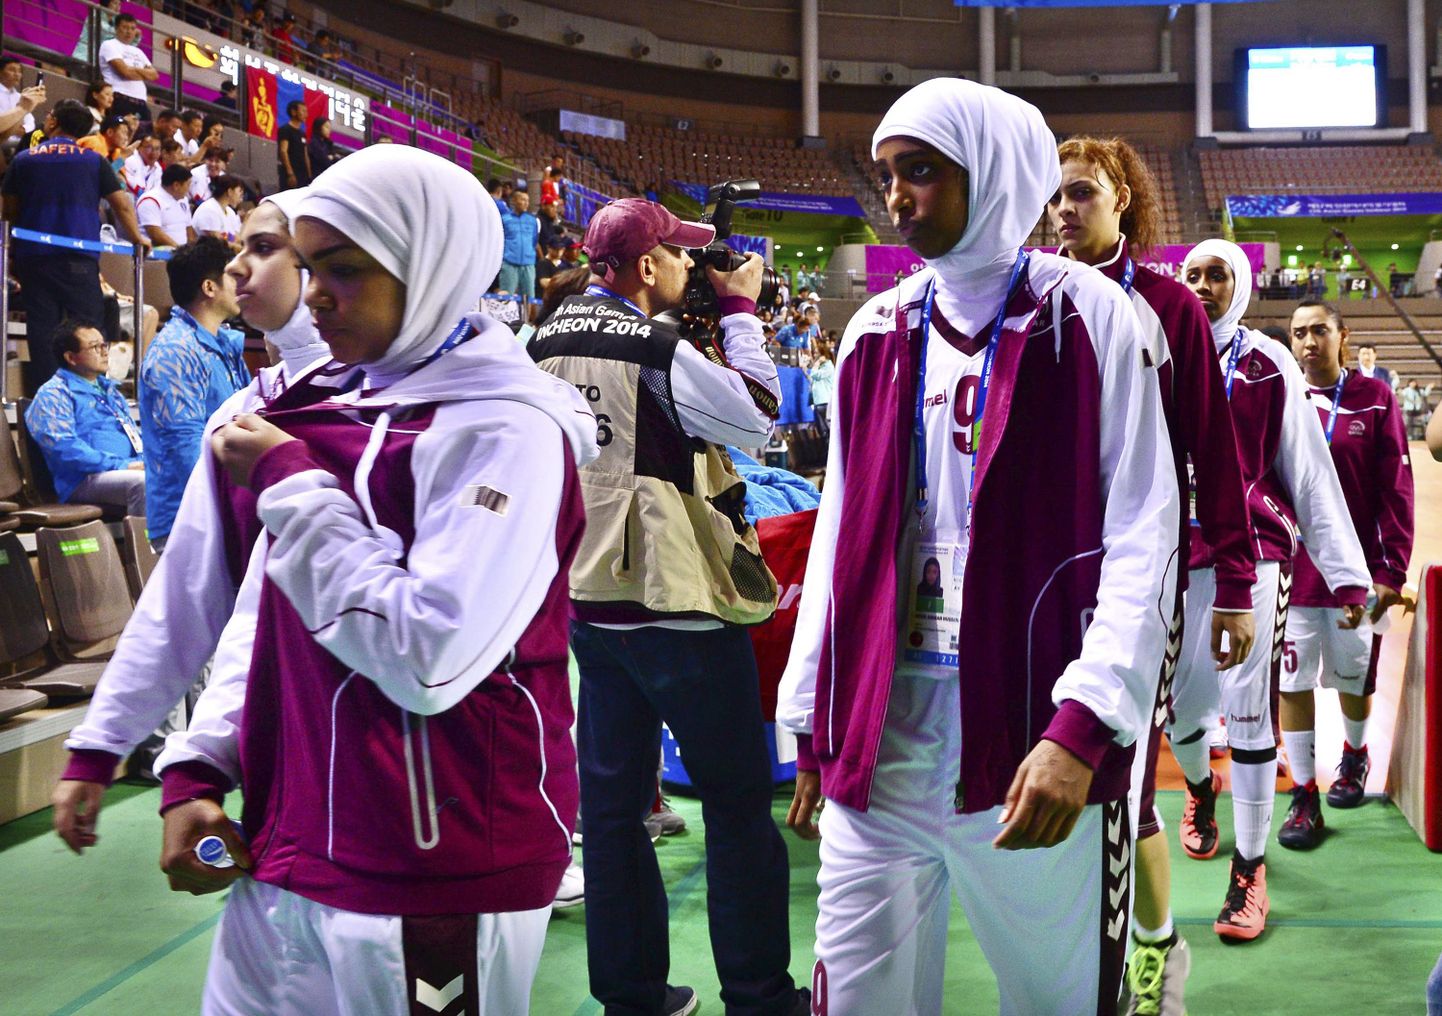 Katari naiskond keeldus 2014. aasta Aasia mängudel pallimisest, sest neil ei lubatud kanda hijabi.